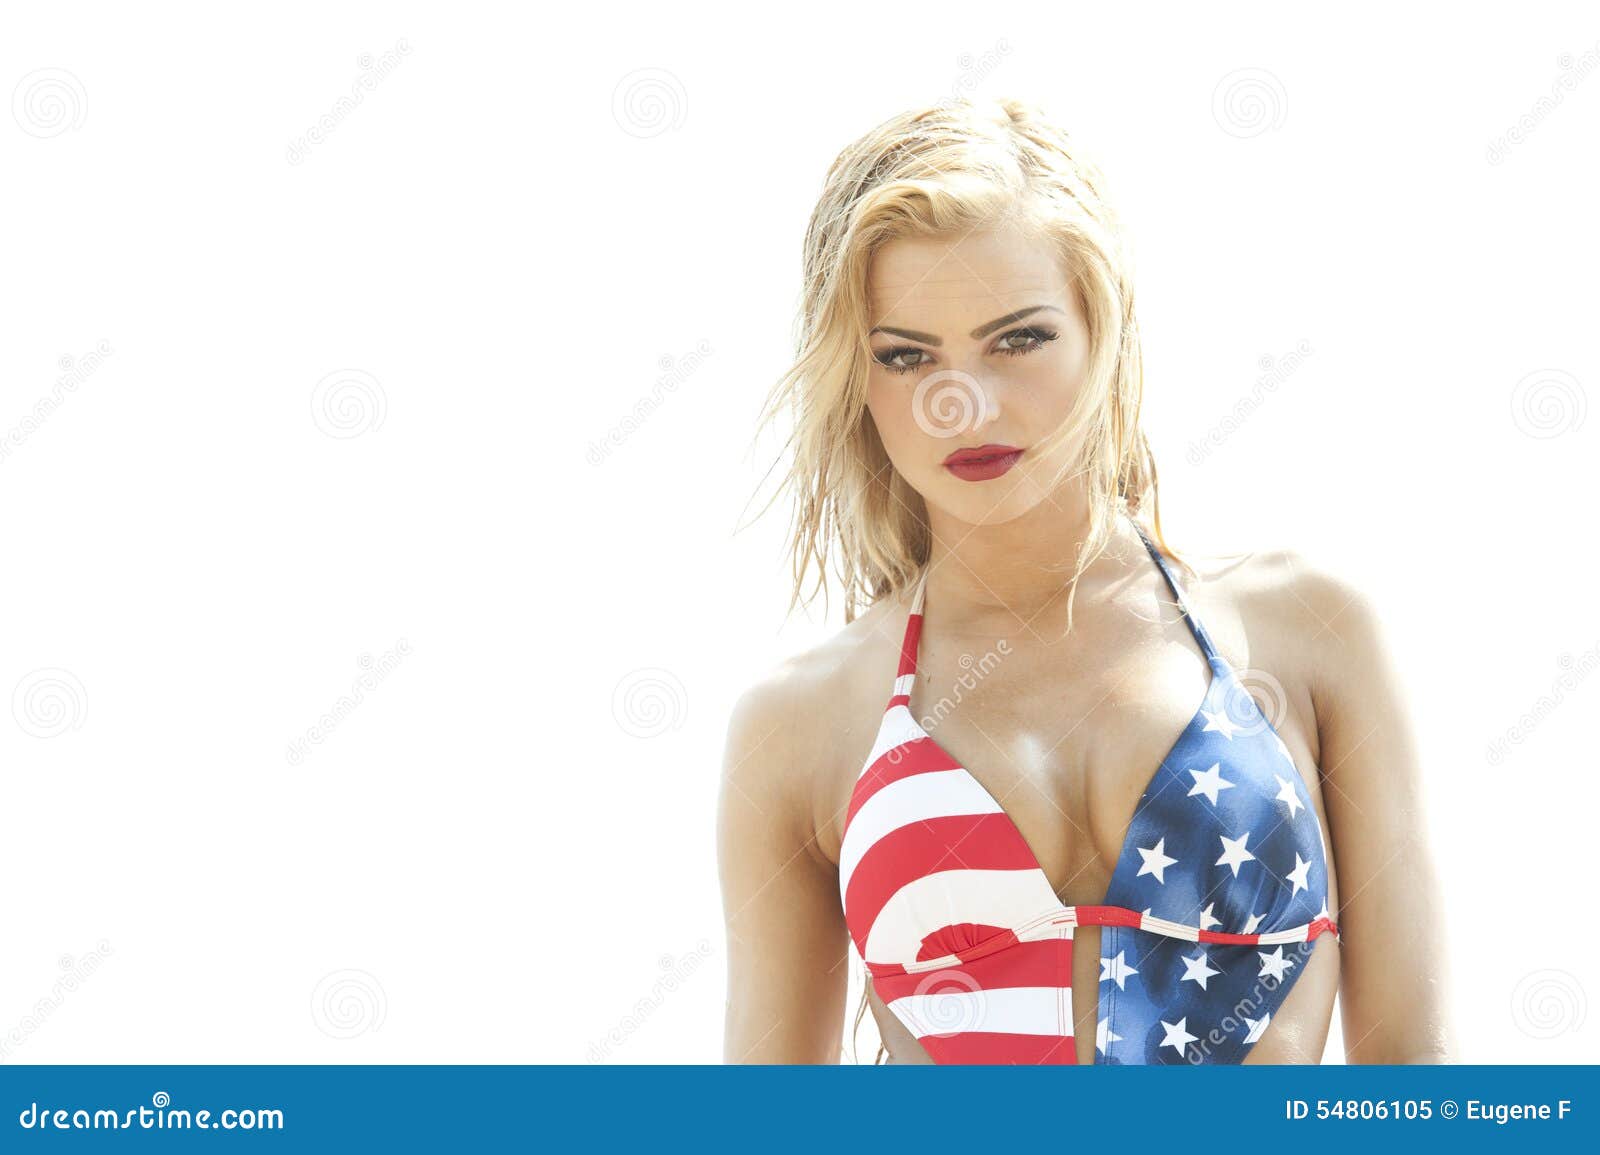 Blonde America 20